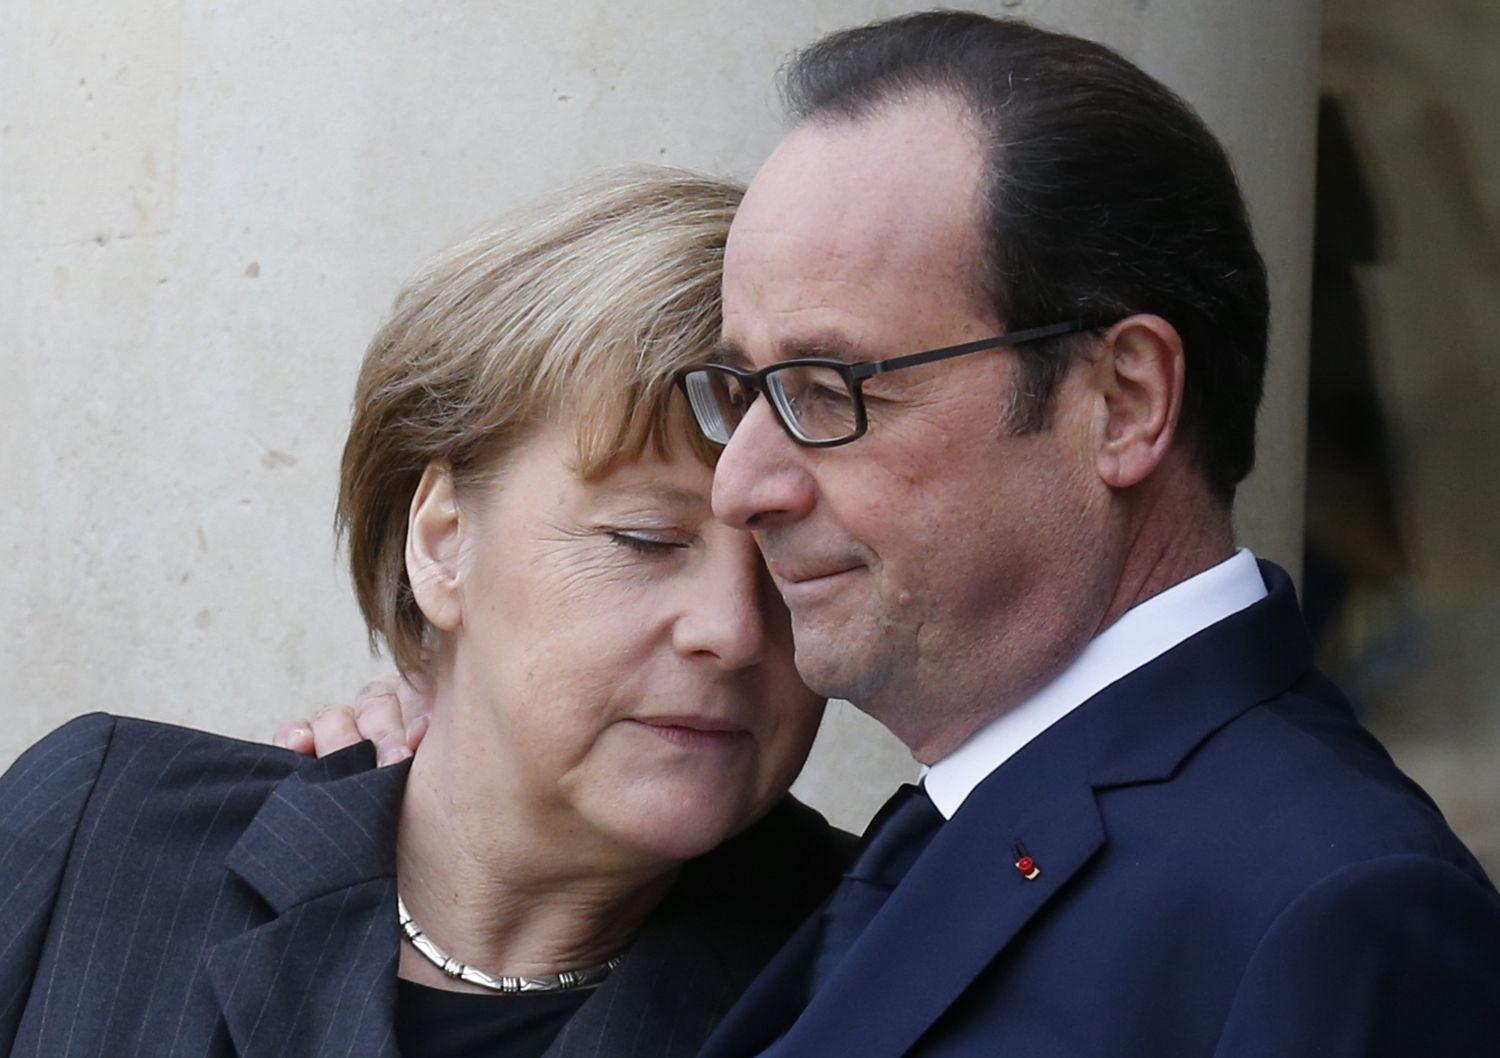 Merkel és Hollande vasárnap. Mindannyiunkat támadás ért – állítják egybehangzóan a politikusok